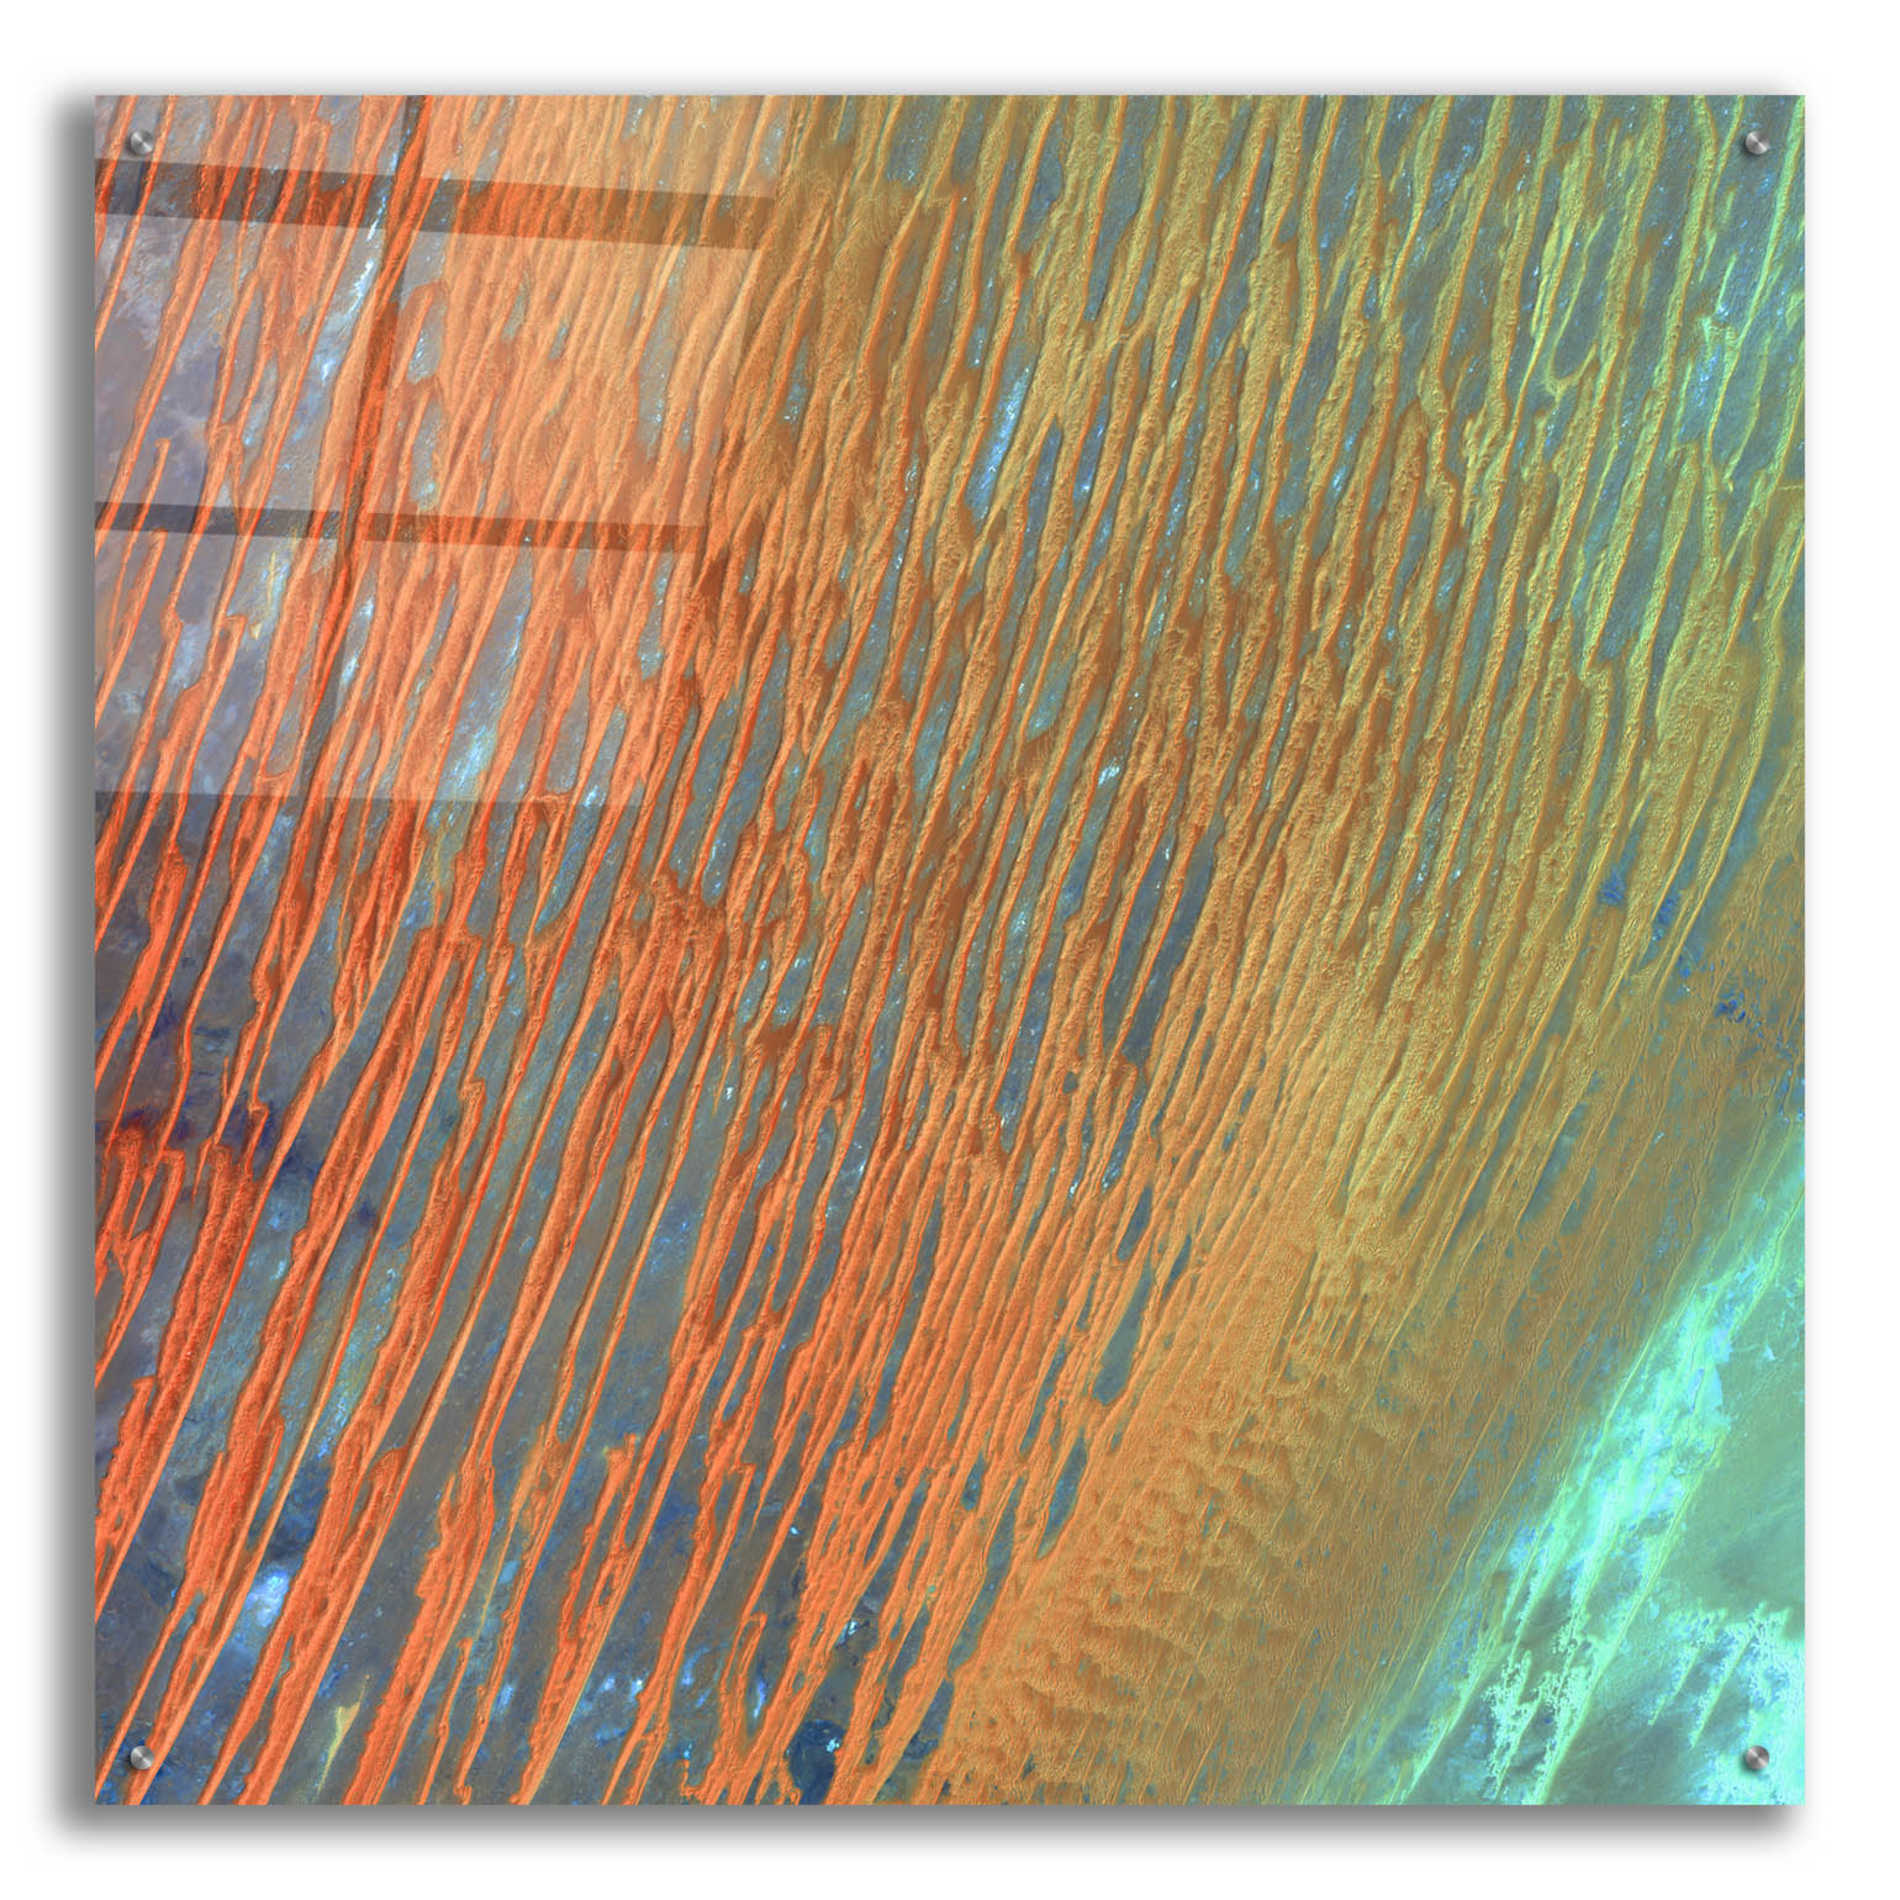 Epic Art 'Earth as Art: Desert Patterns,' Acrylic Glass Wall Art,36x36